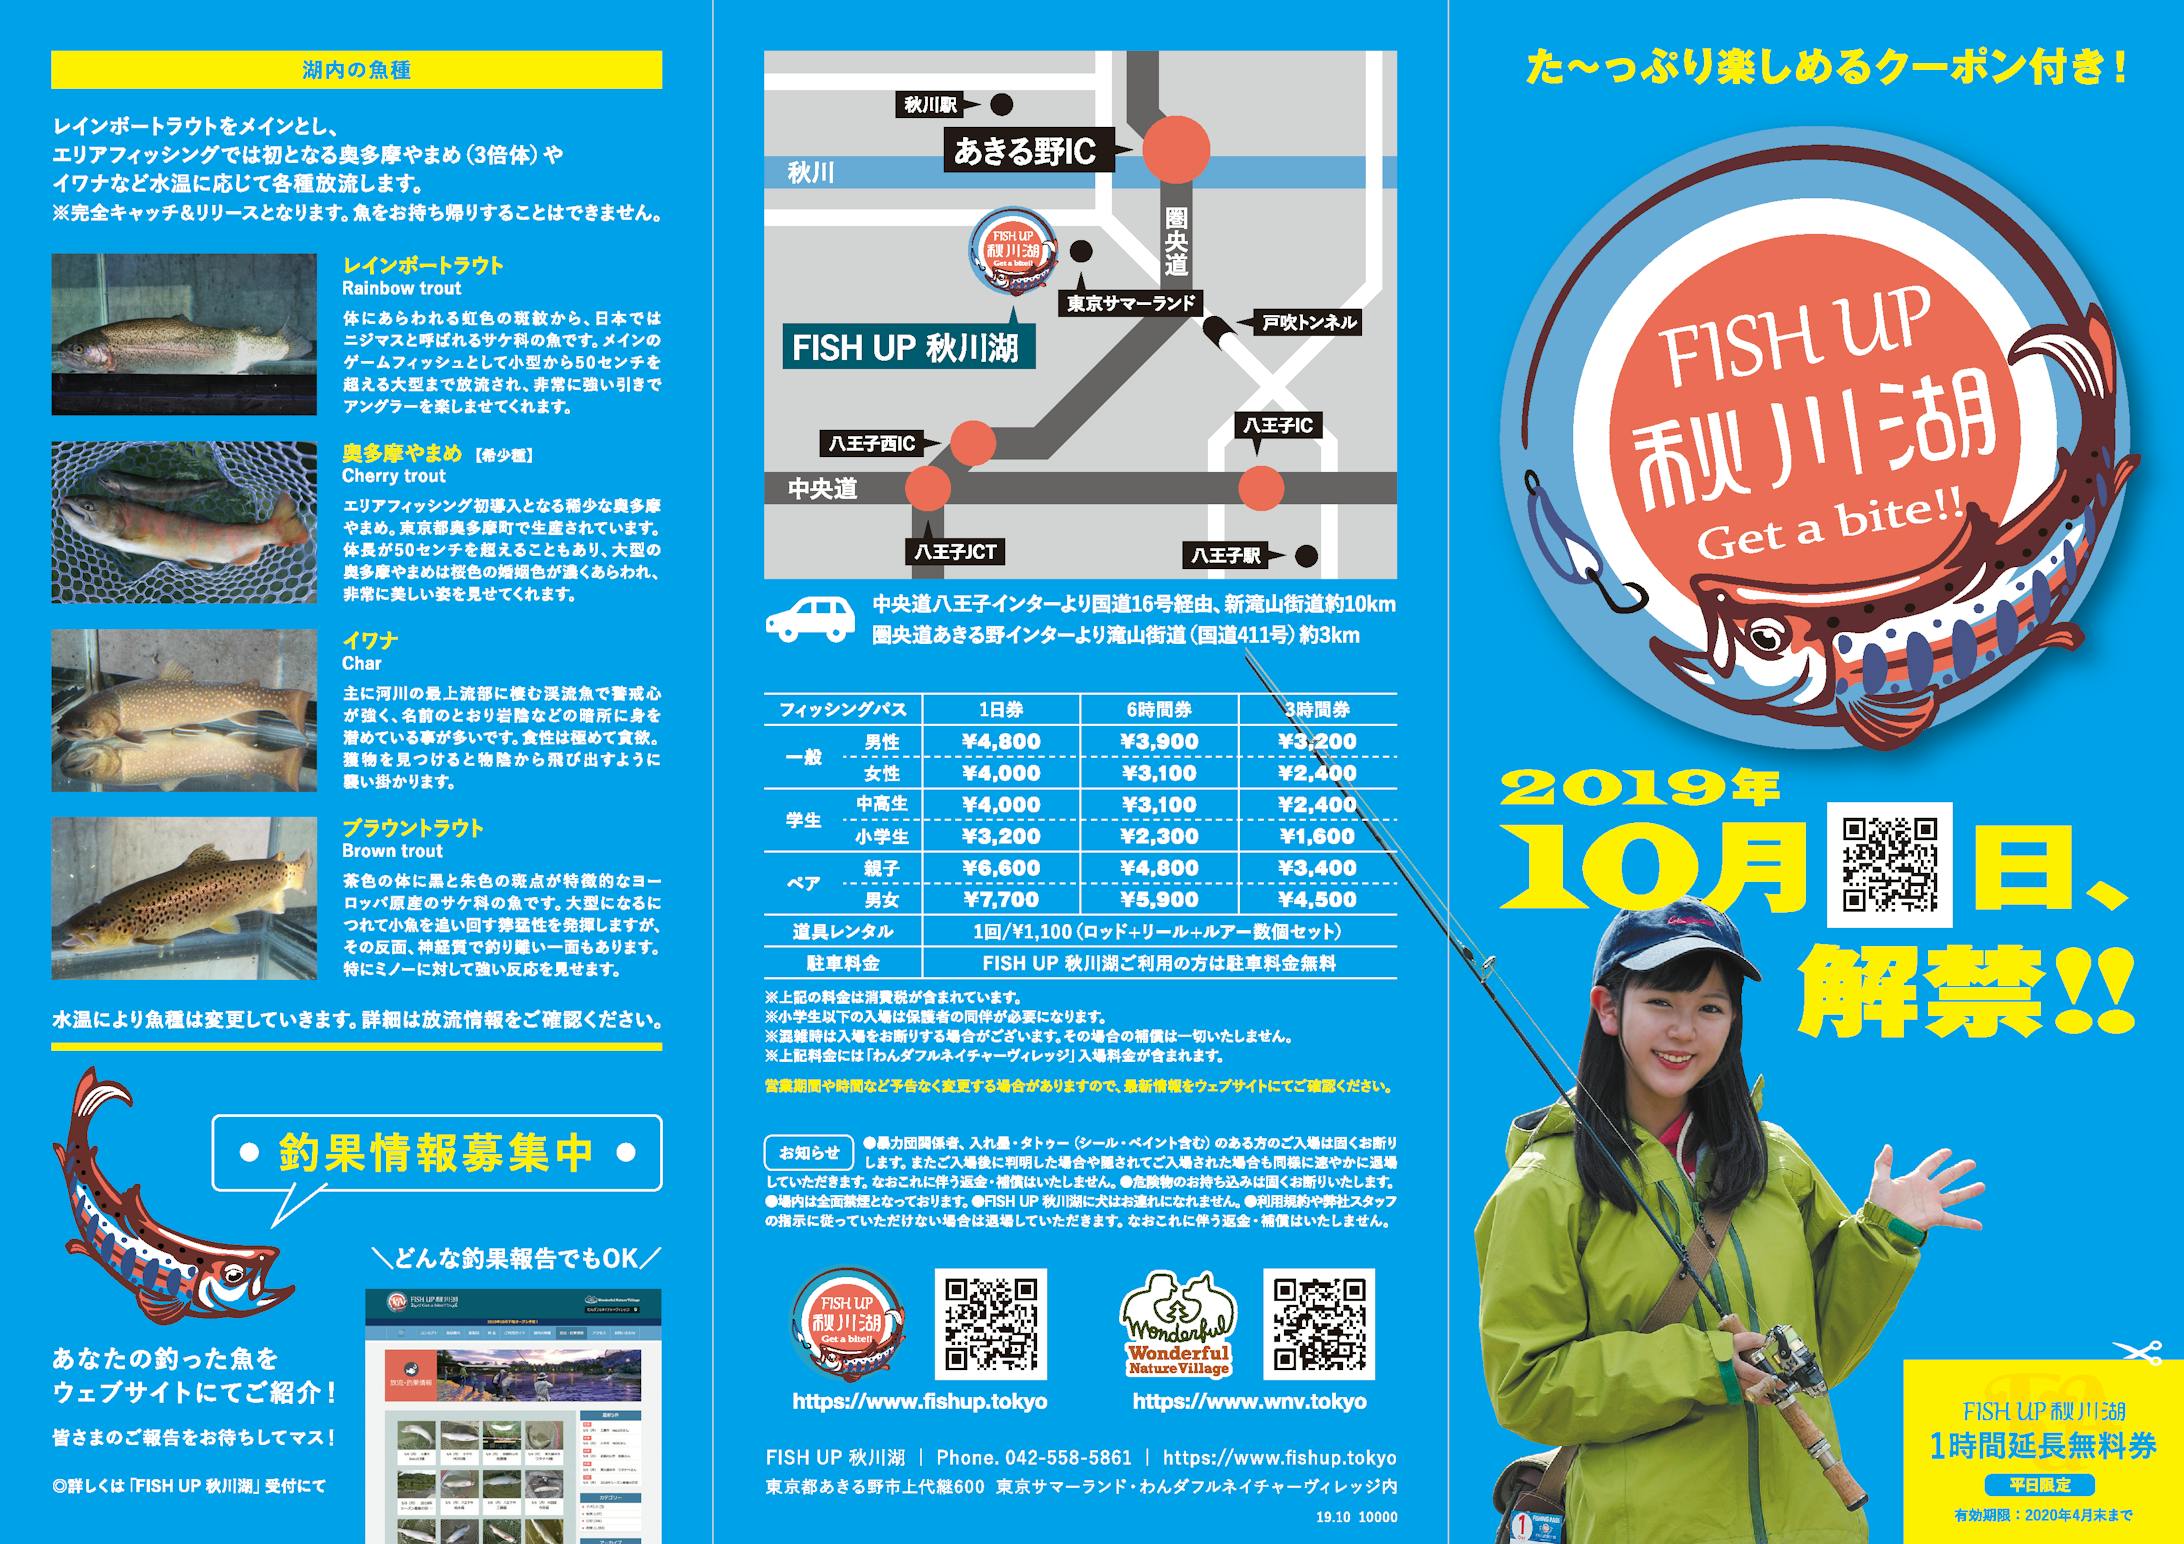 （株）東京サマーランド《FISH UP 秋川湖》 - トータルプロモーション【AD／POSTER／FLYER】-4